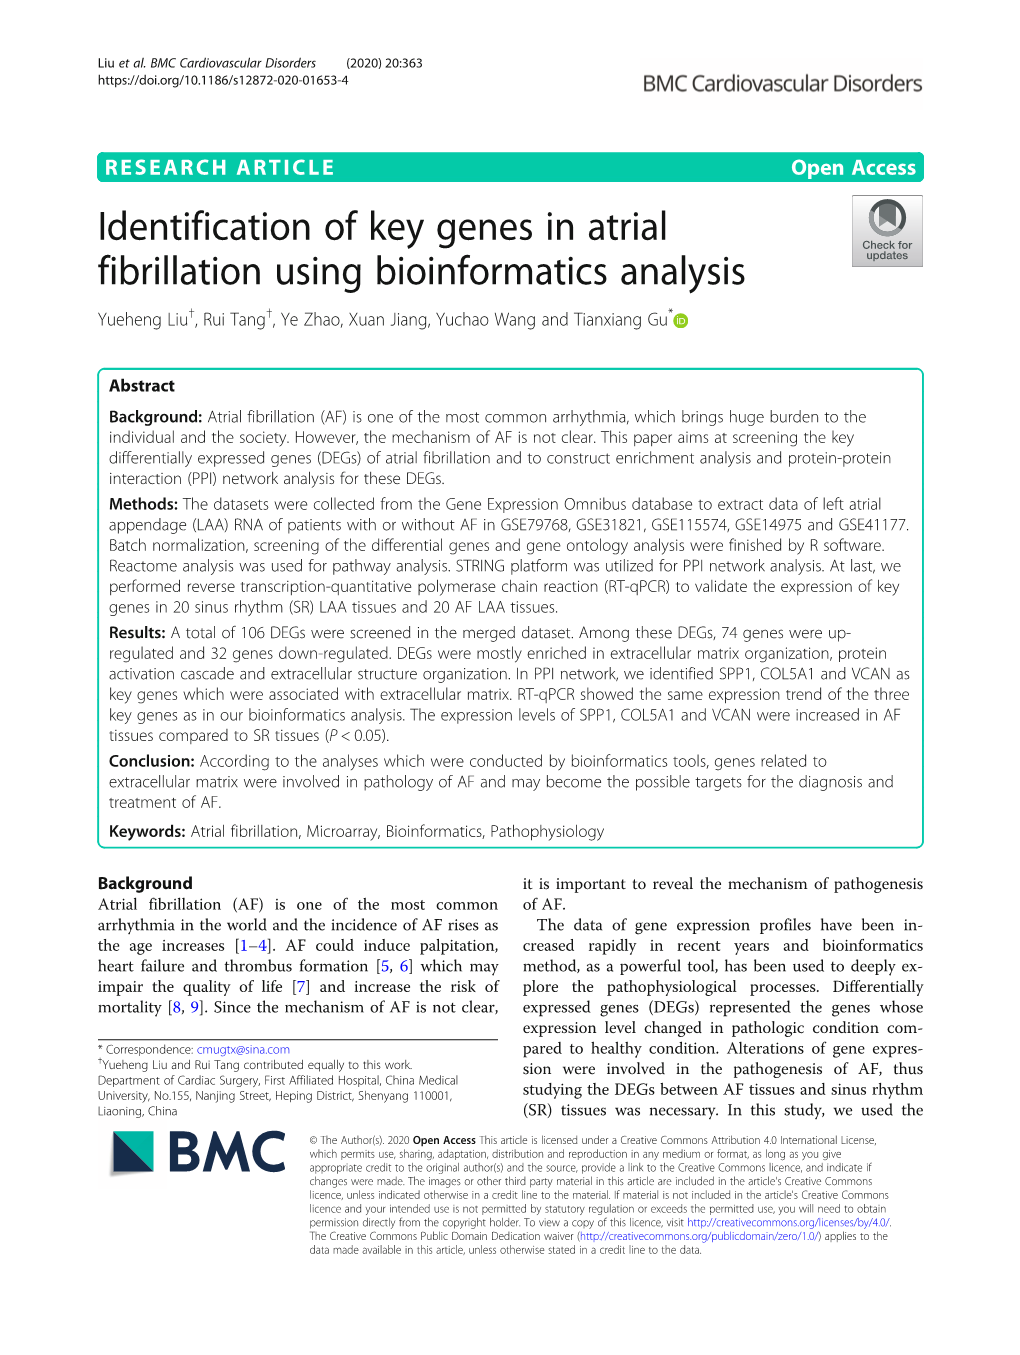 Identification of Key Genes in Atrial Fibrillation Using Bioinformatics Analysis Yueheng Liu†, Rui Tang†, Ye Zhao, Xuan Jiang, Yuchao Wang and Tianxiang Gu*